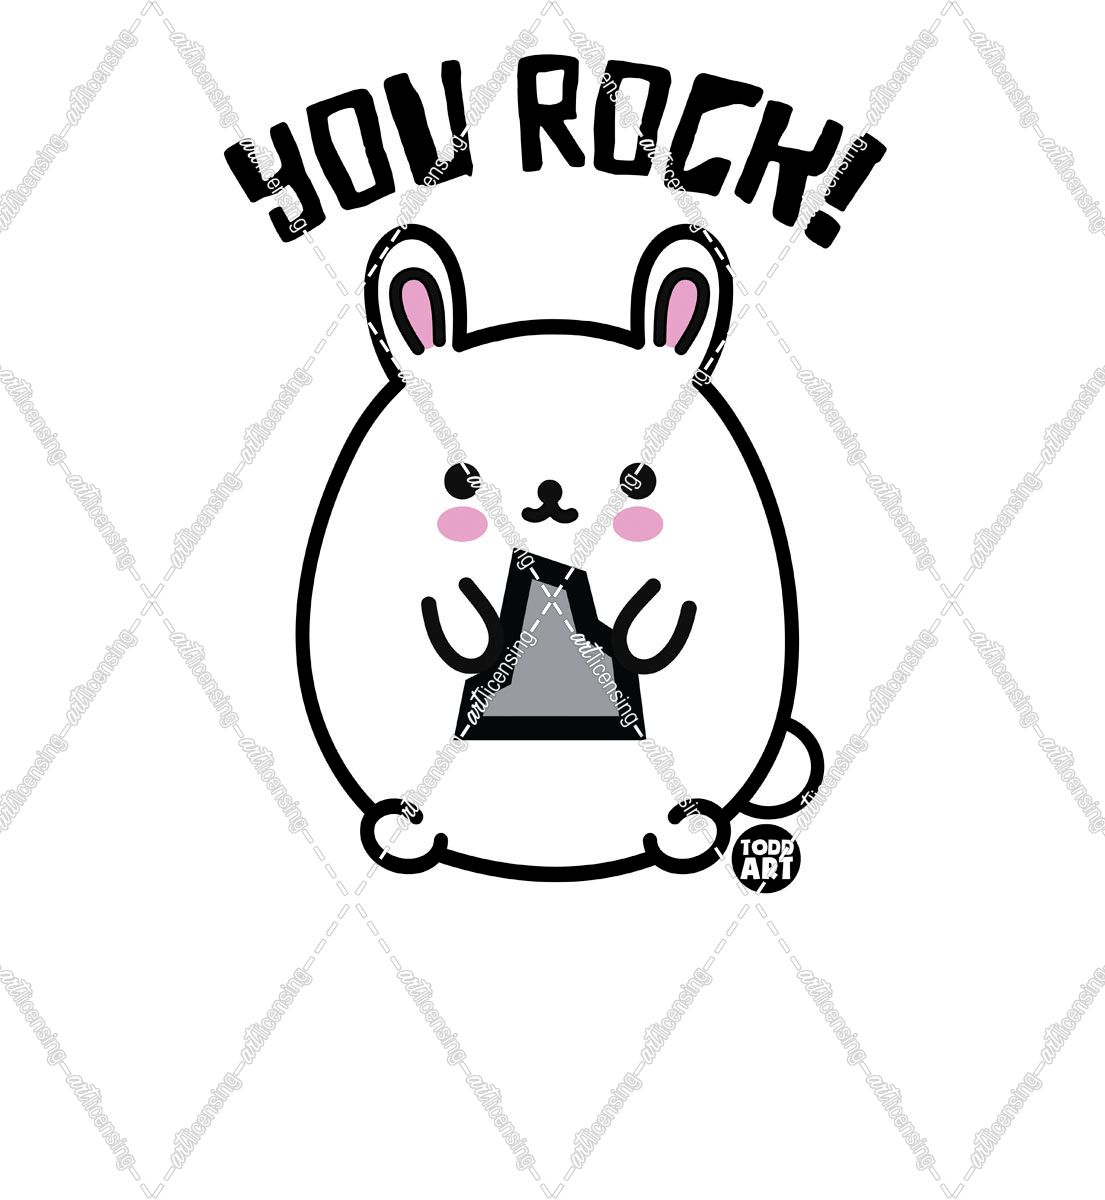 Bad Bunny – You Rock